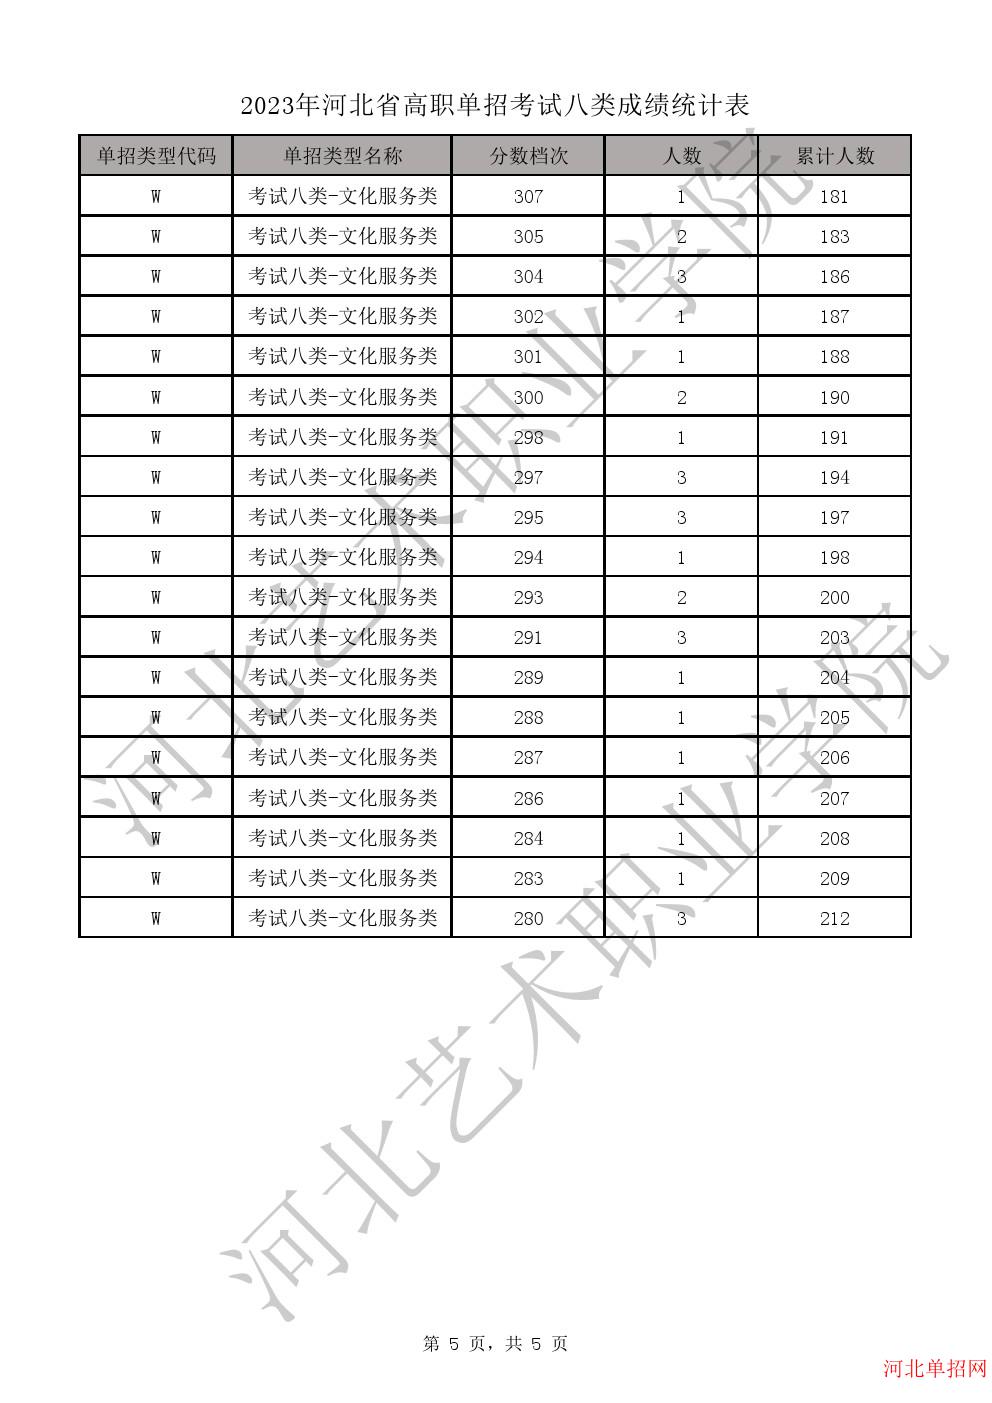 2023年河北省高职单招考试八类一分一档表-W学问服务类一分一档表 图5